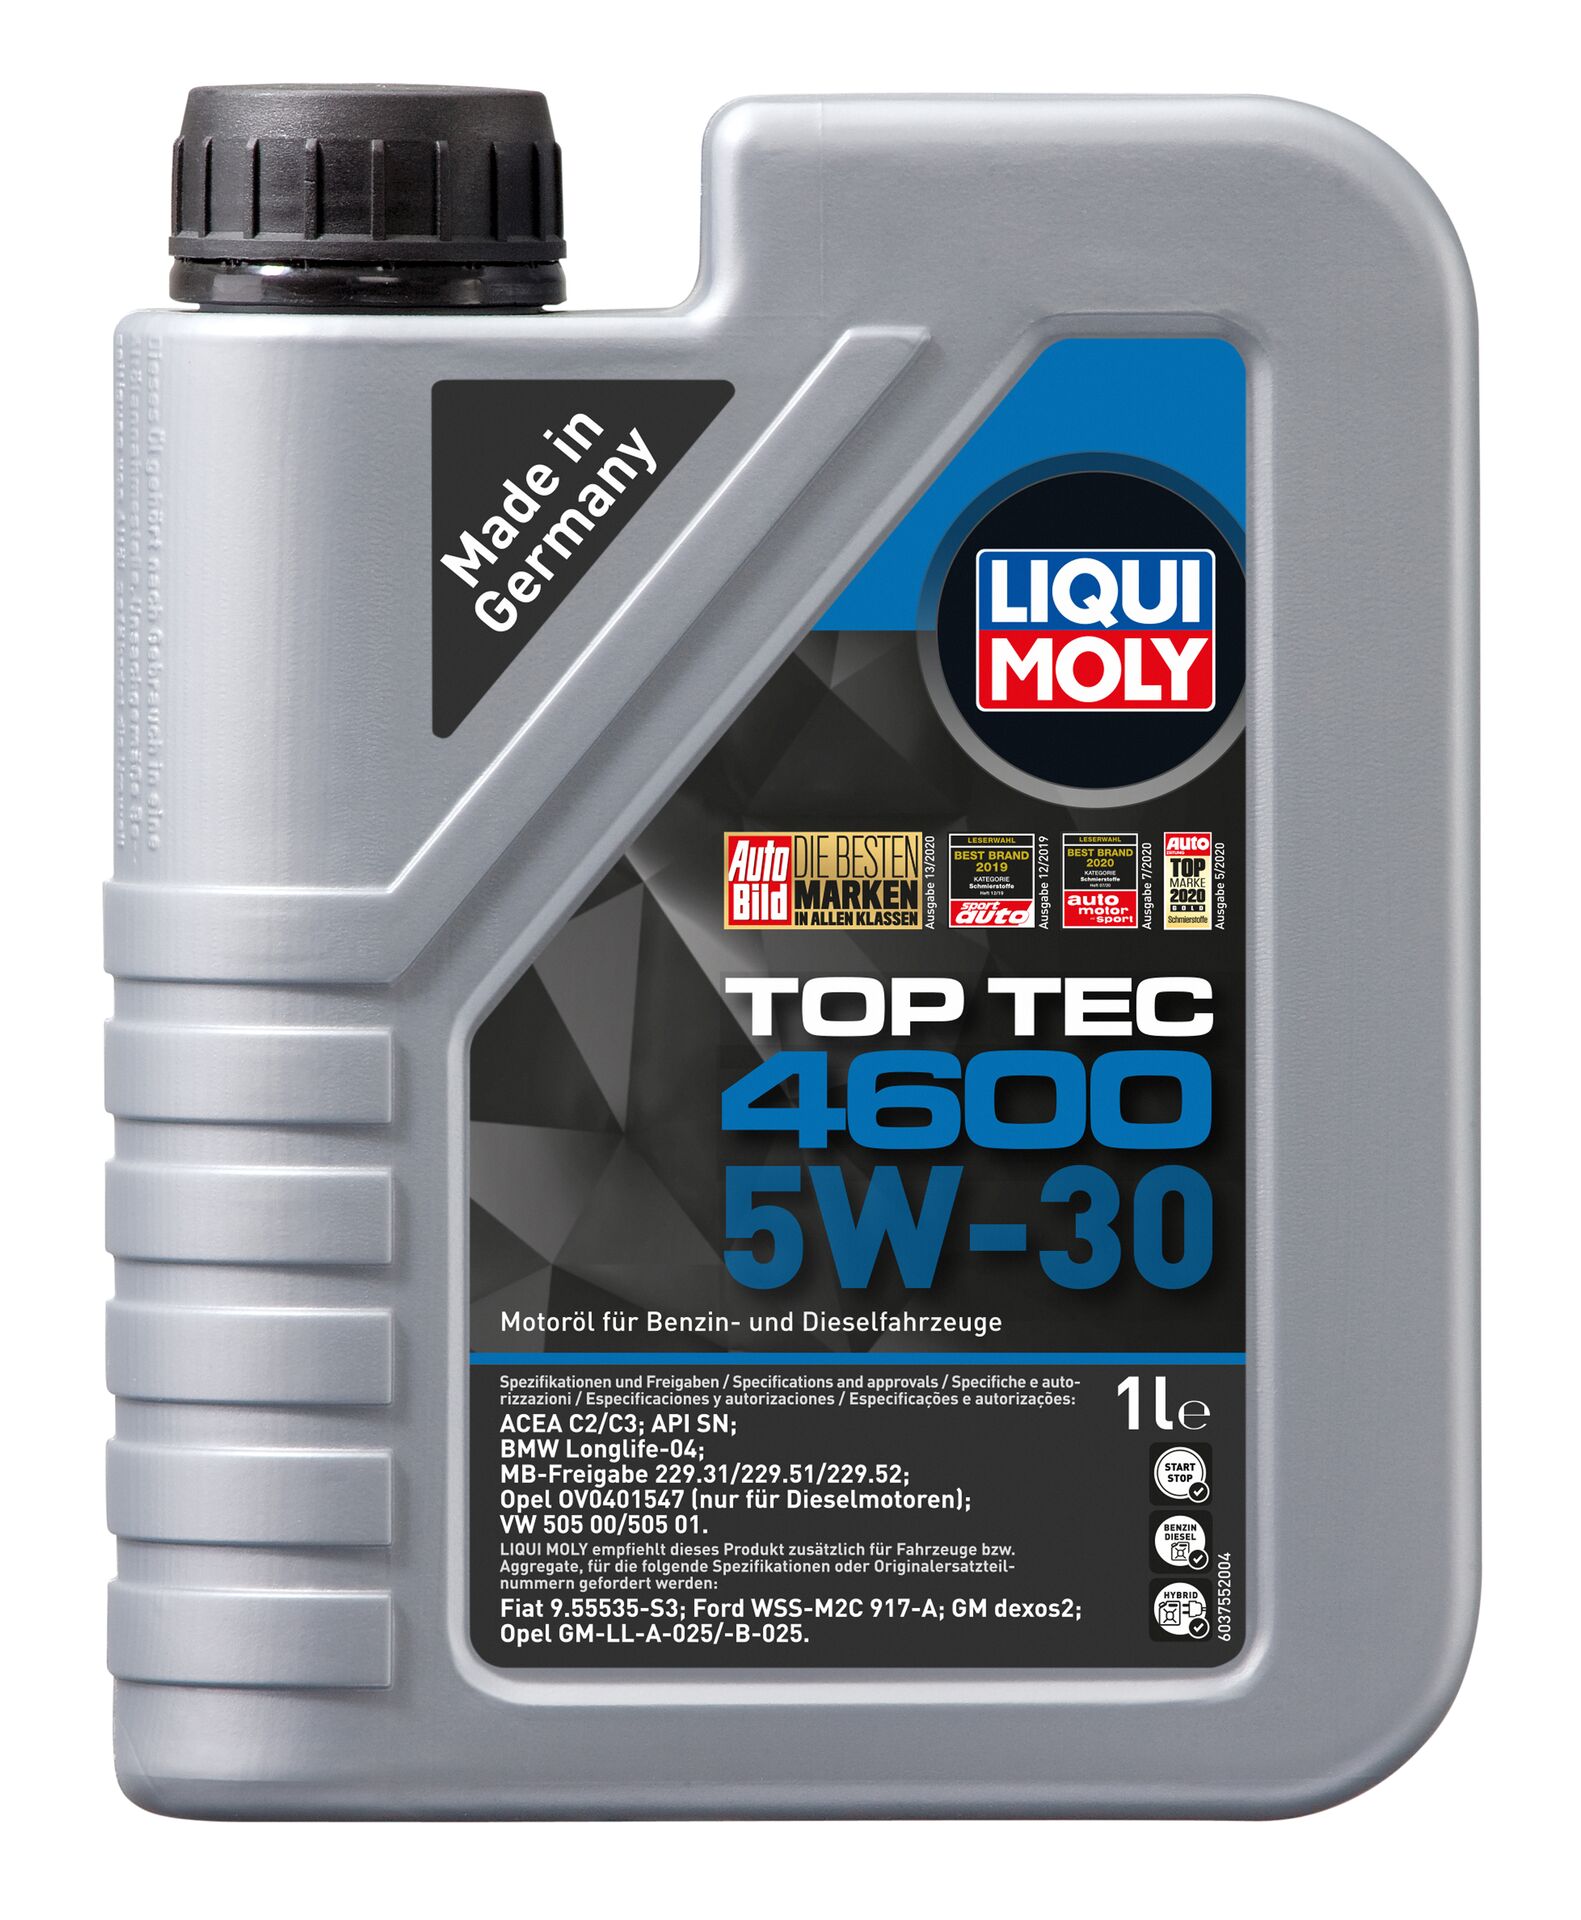 LIQUI-MOLY Motorenöl Top Tec 4600 5W-30 1 l 